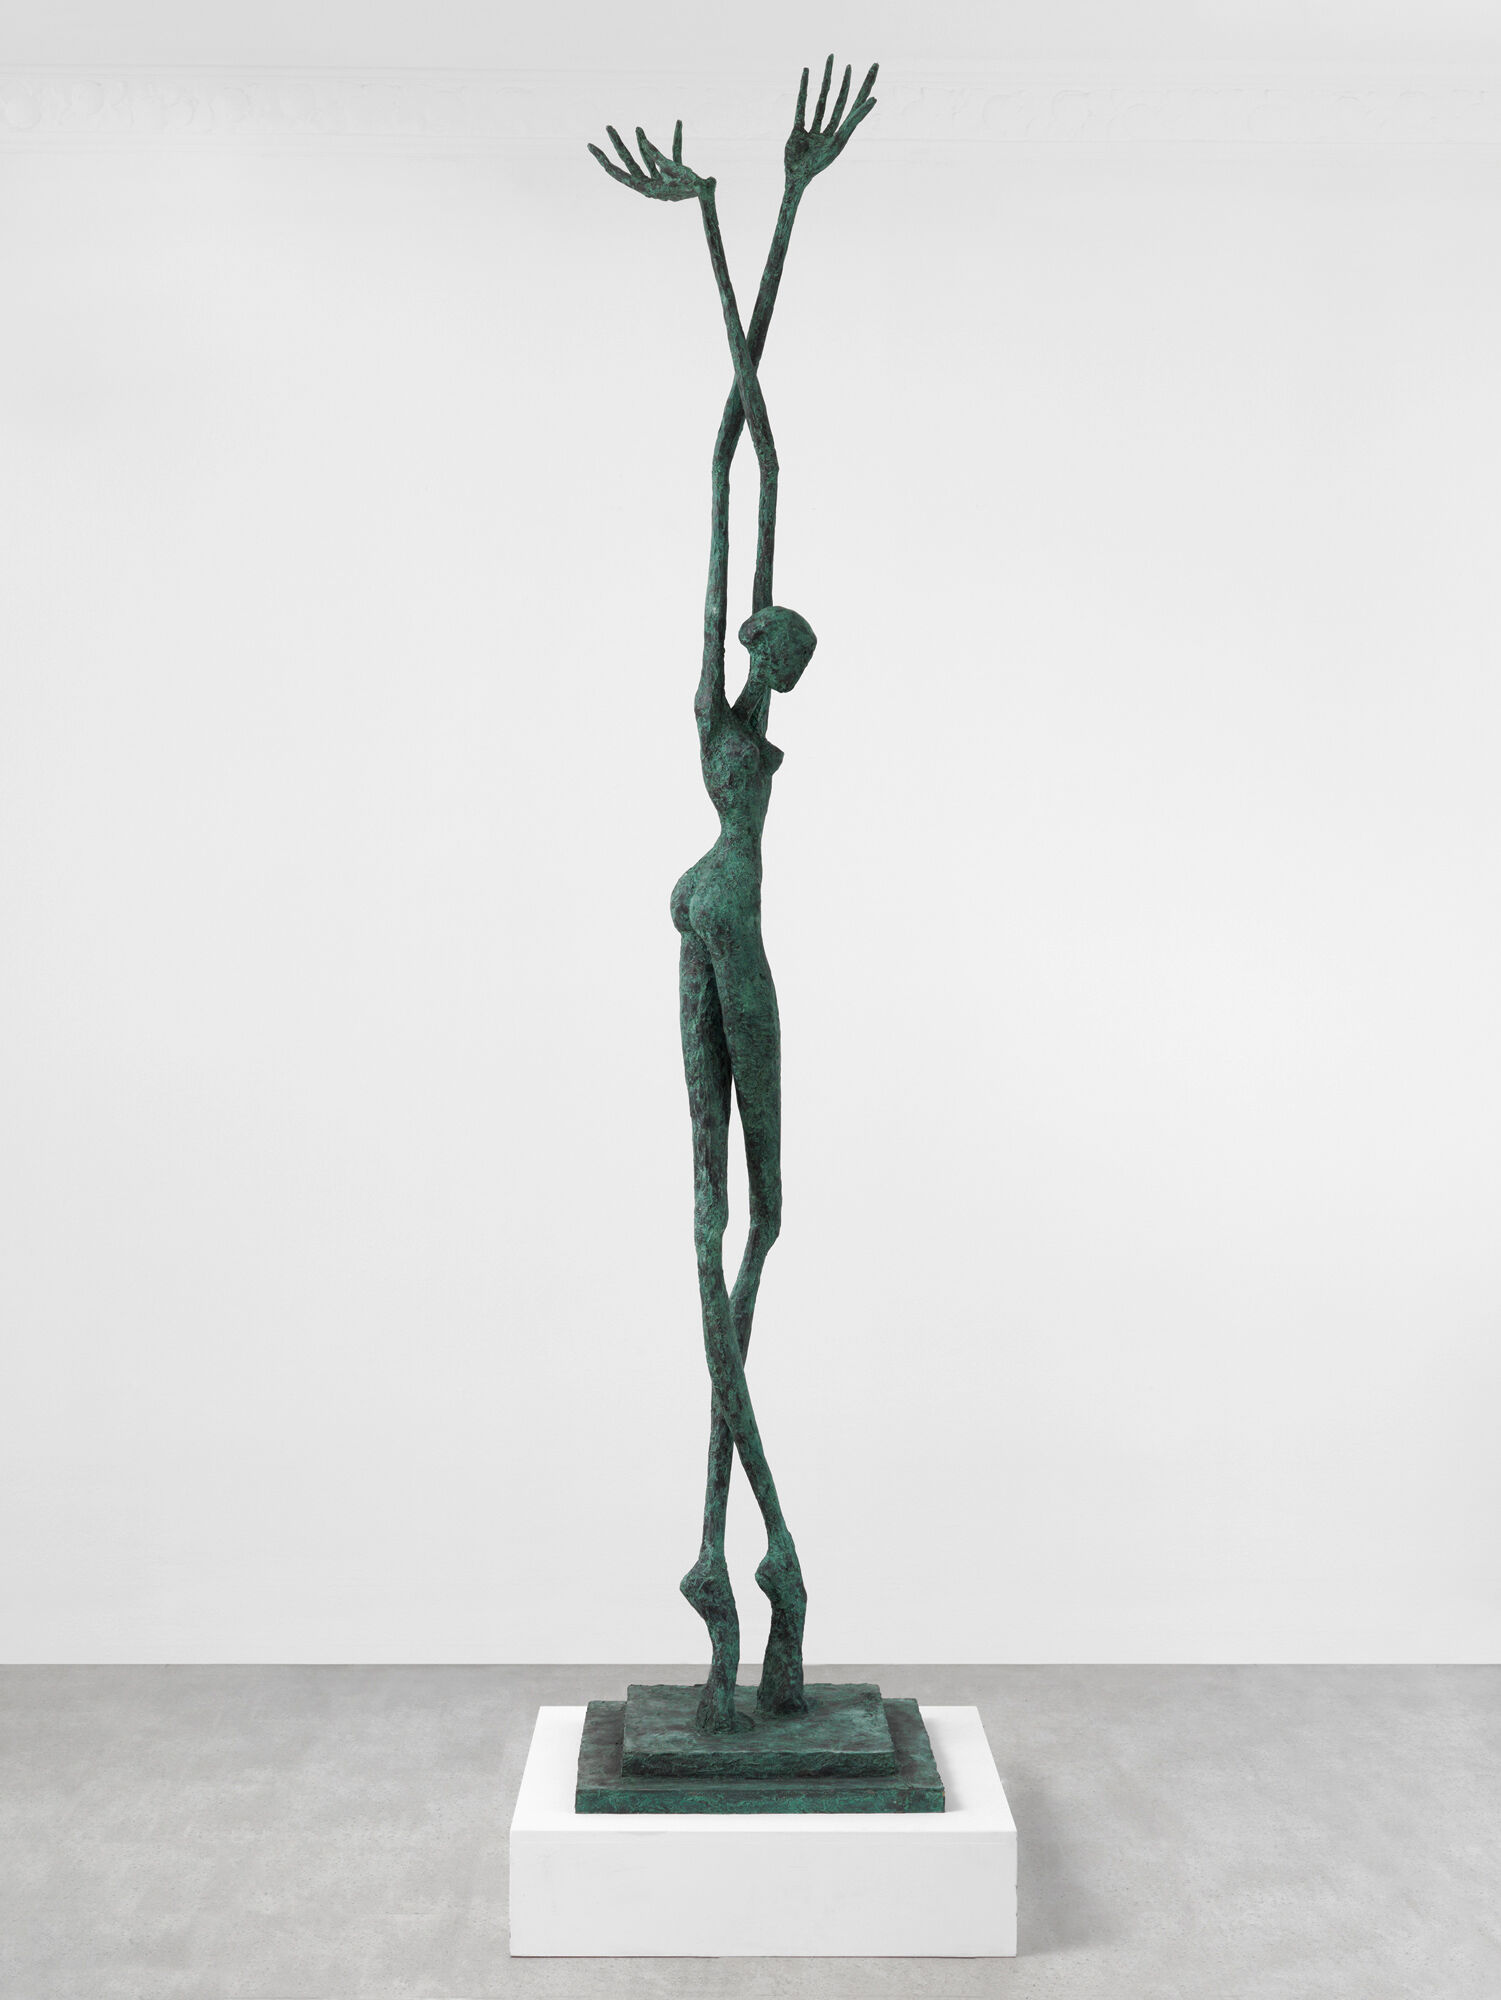 Sculpture "Screwed" (2013) by Helge Leiberg